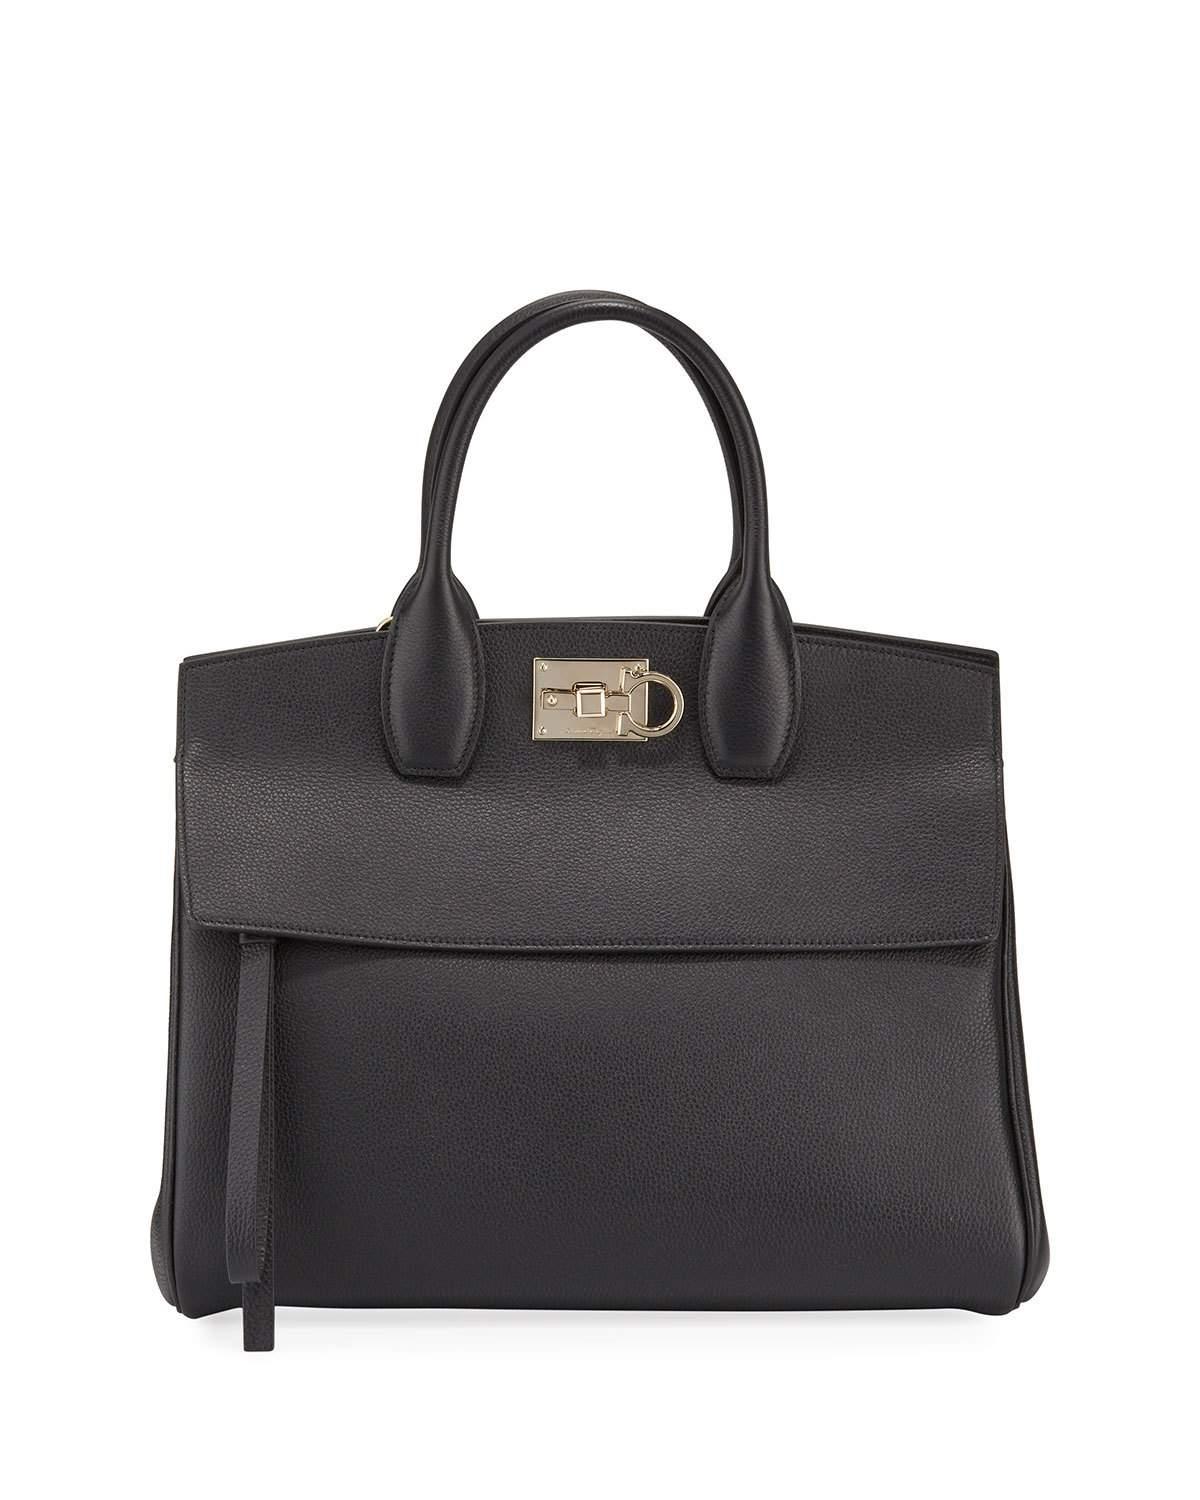 Ferragamo Studio Medium Leather Satchel Bag in Black - Lyst